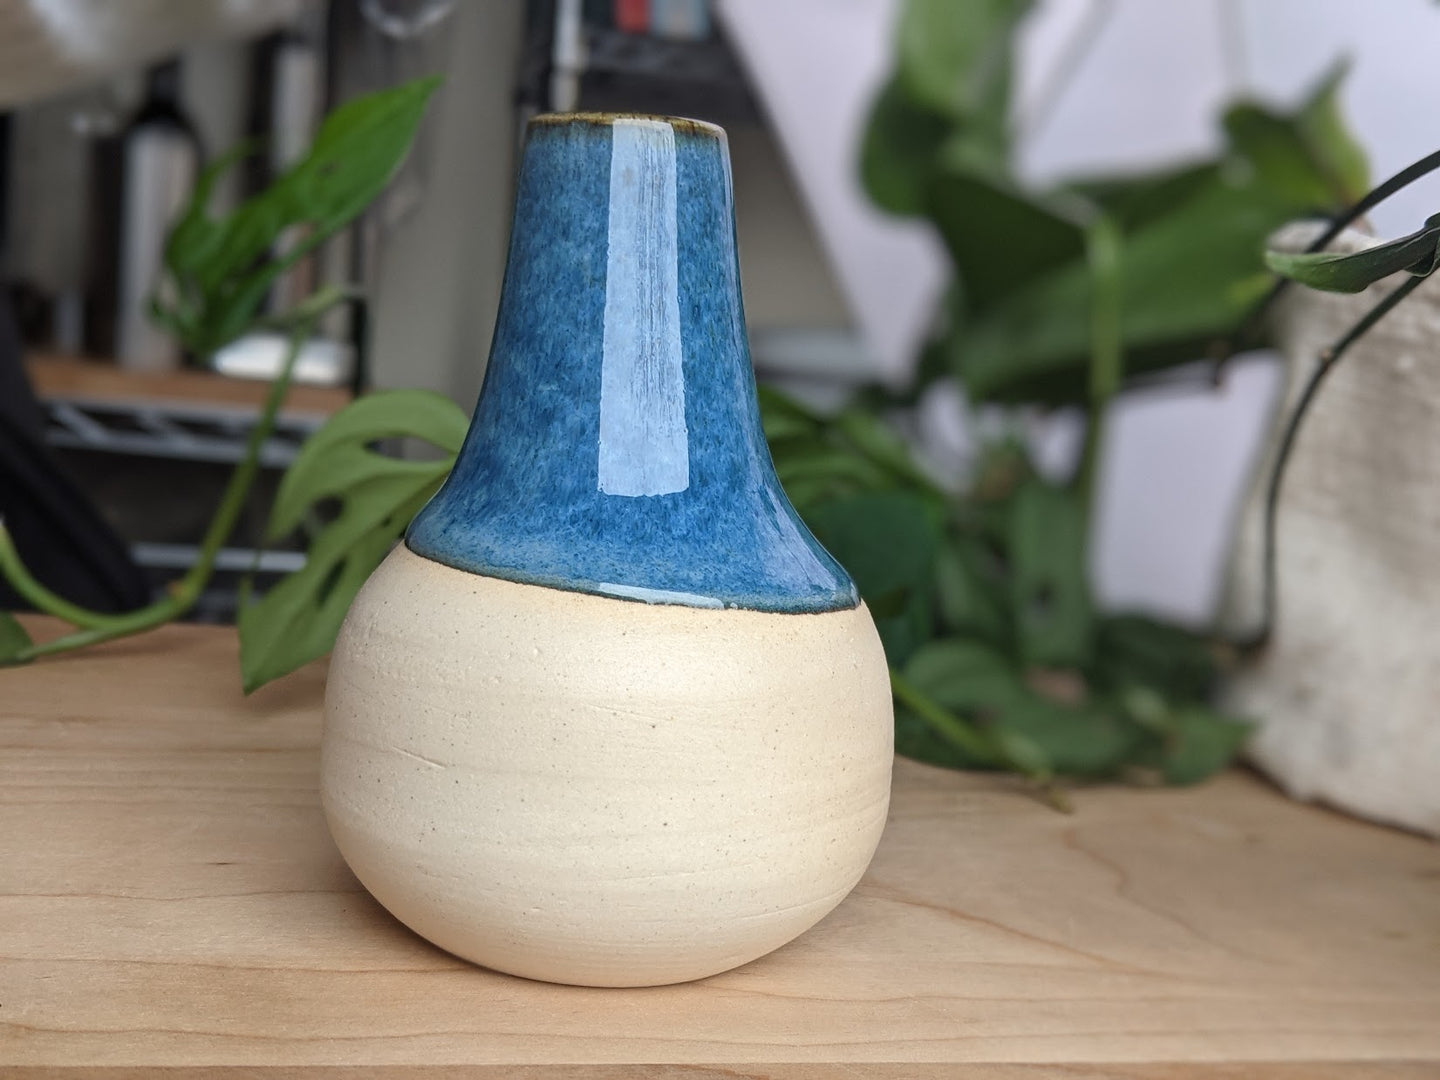 Blue and white bud vase